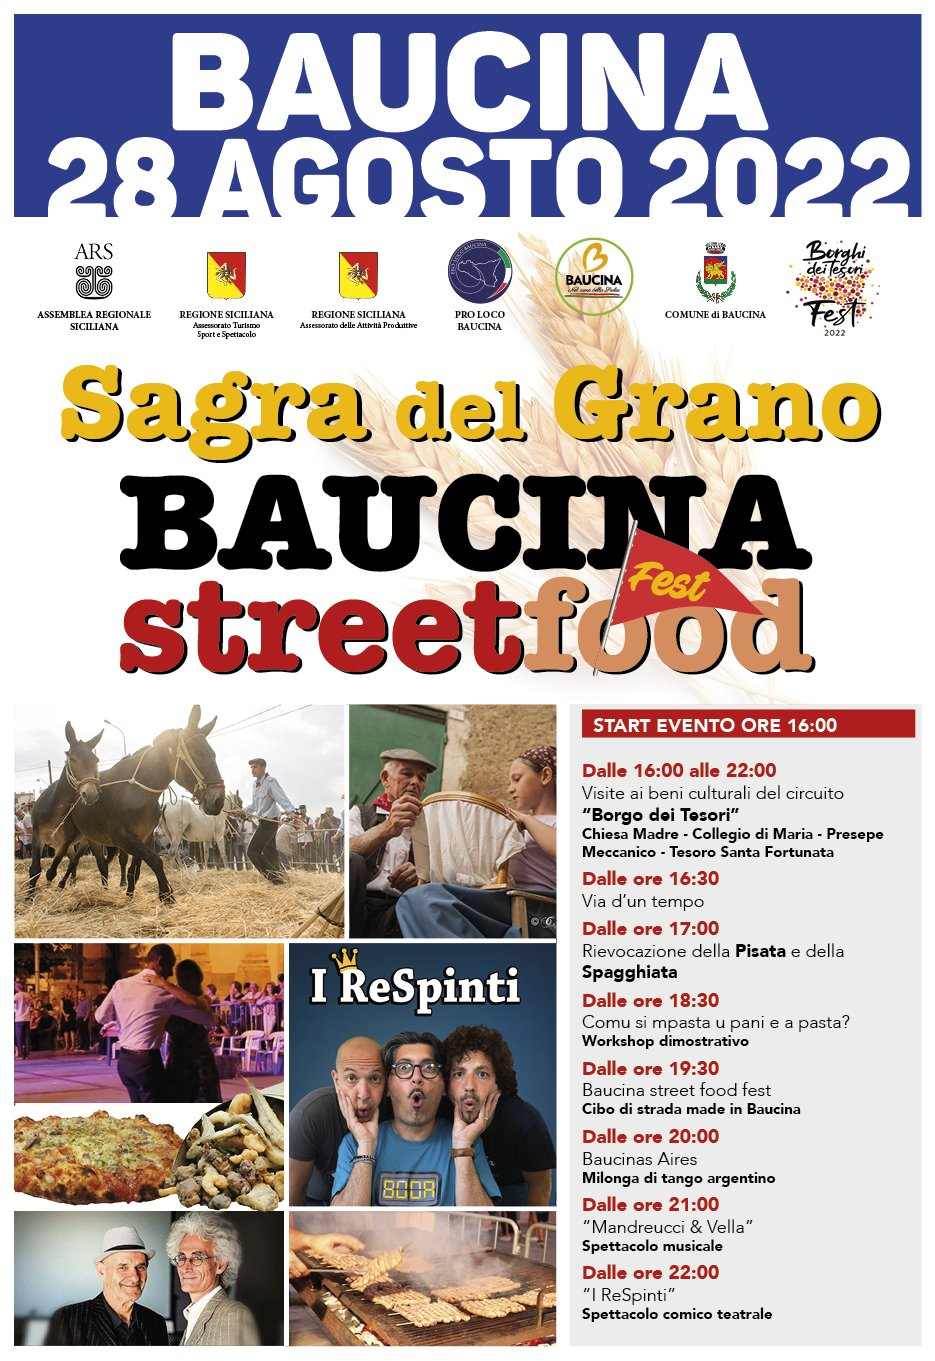 Baucina (PA)
"Sagra del Grano e Street Food Fest" 
28 Agosto 2022